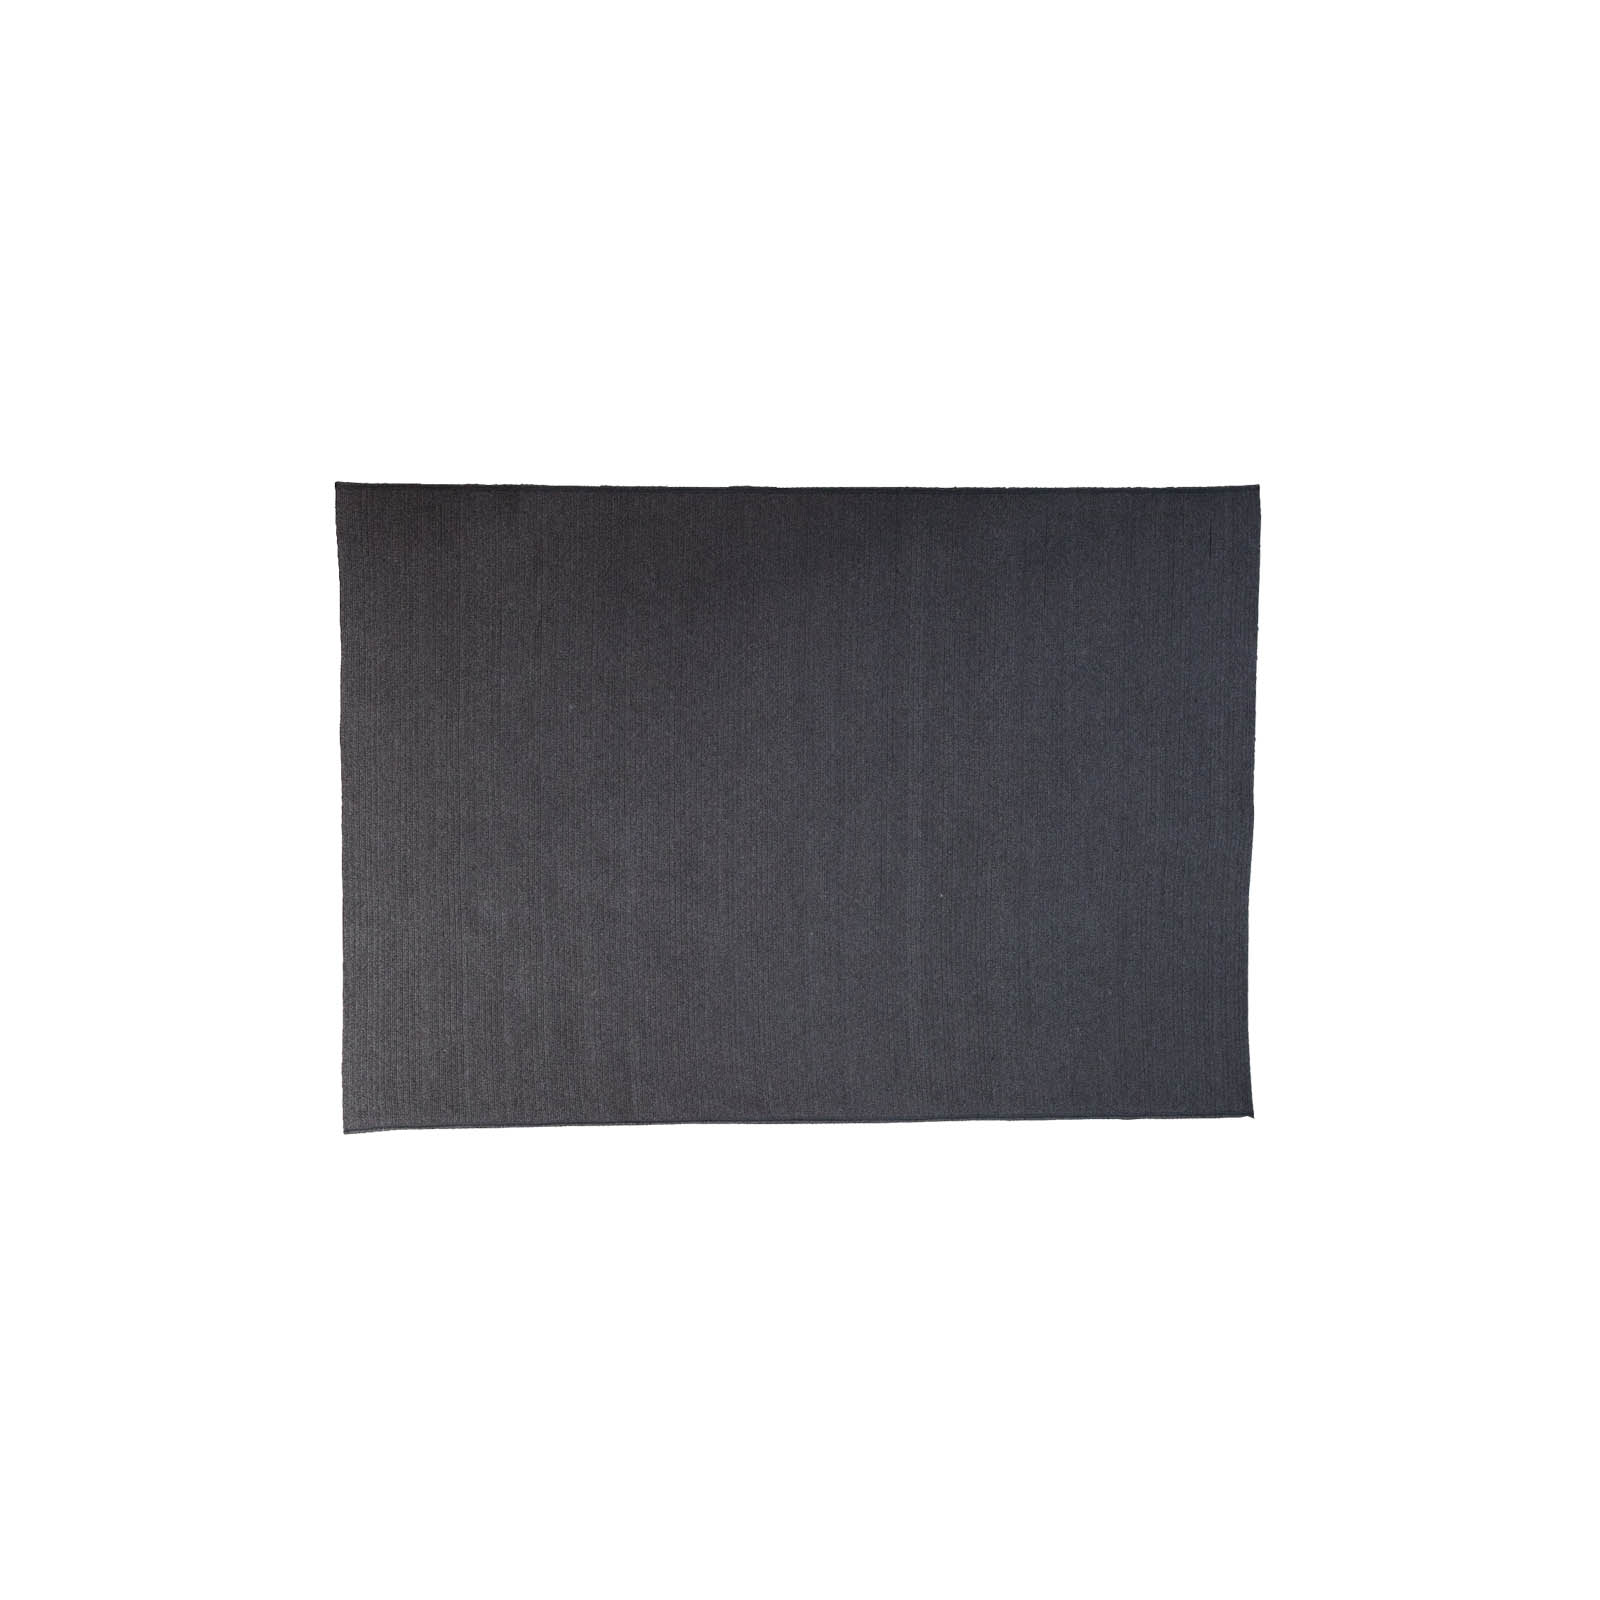 Circle Teppich 240x170 cm aus Cane-line Soft Rope in Dark Grey